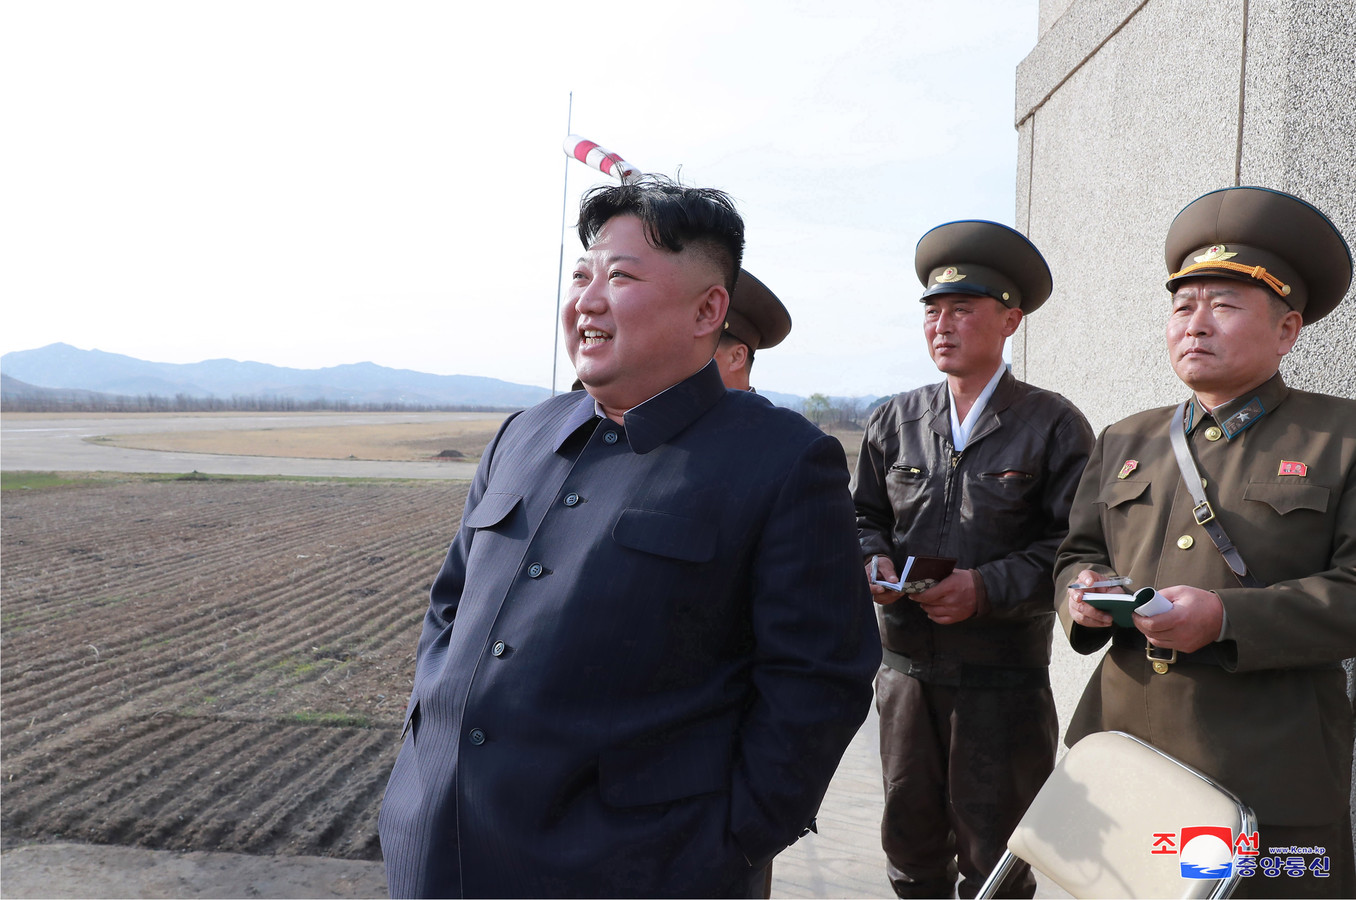 De Noord-Koreaanse leider Kim Jong-un.